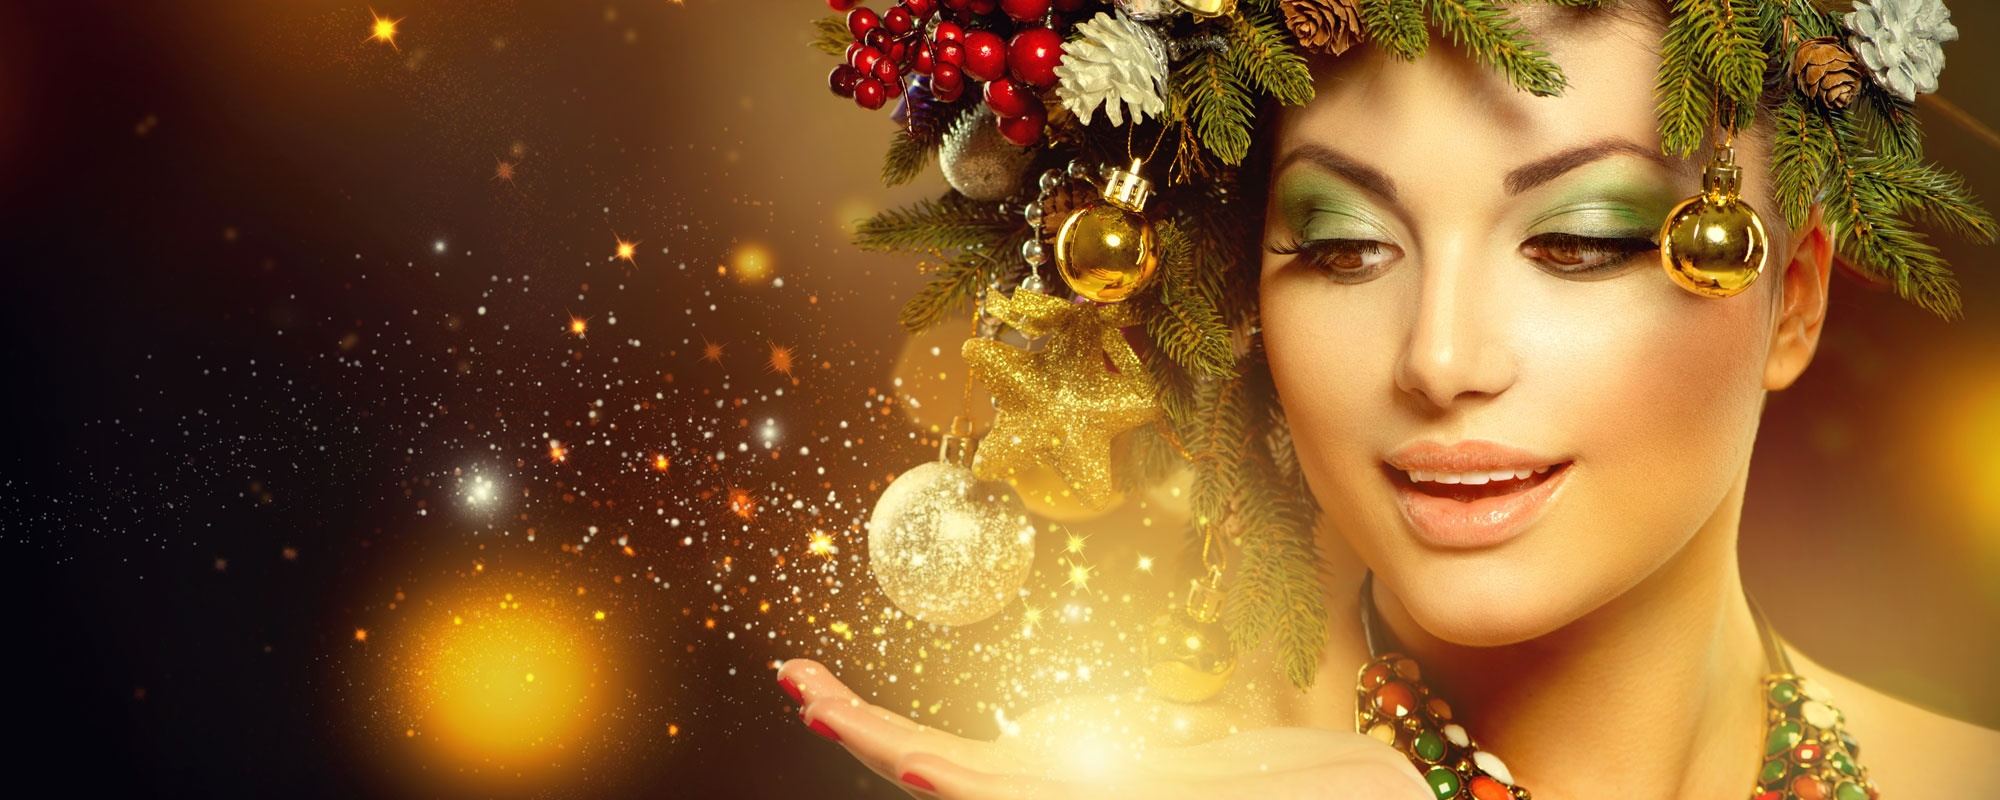 Фото Девушка с новогодней композицией на голове и светящийся пыльцой на руке